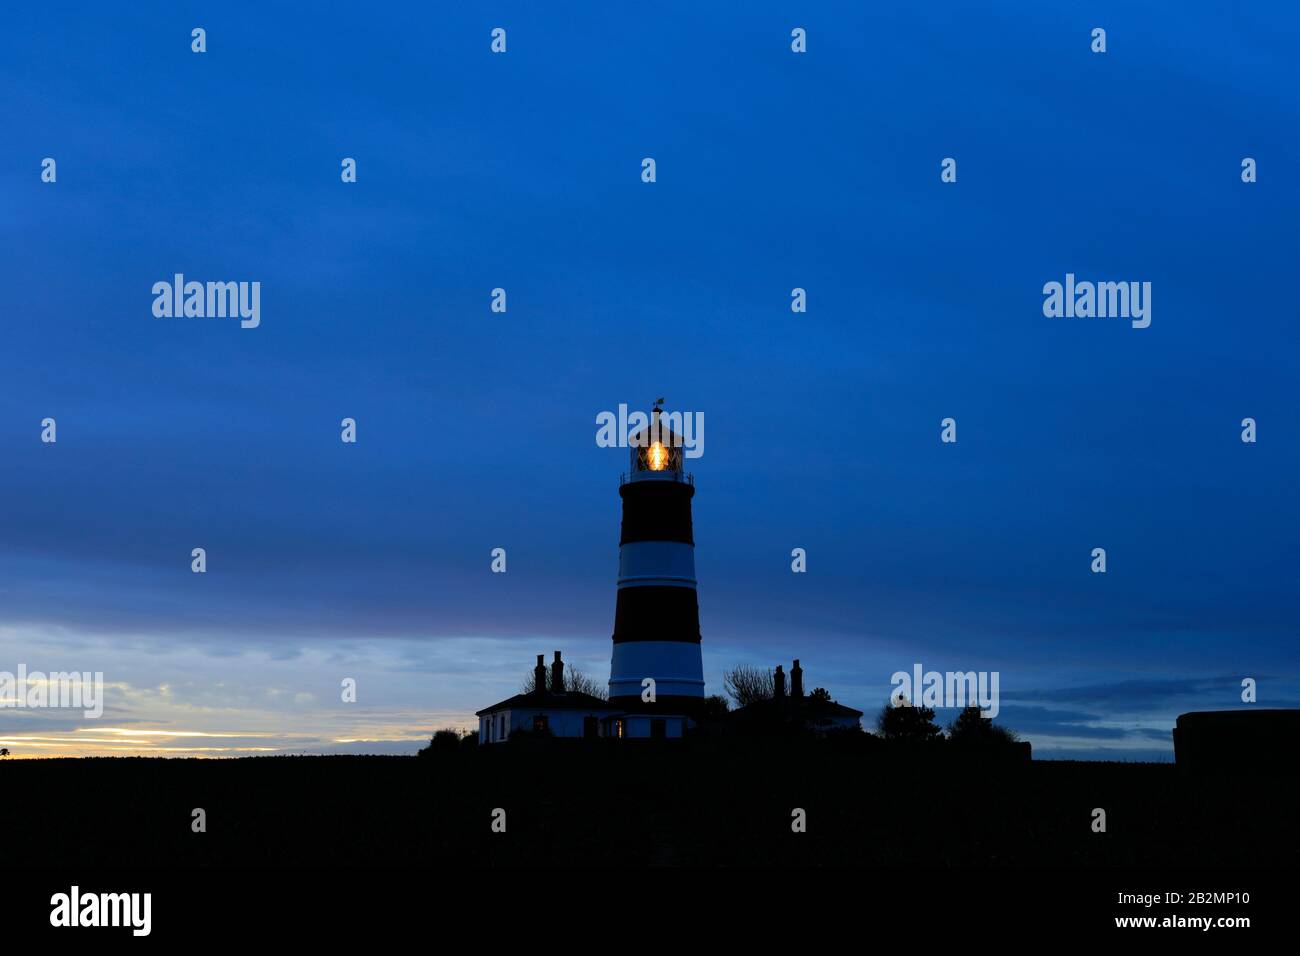 Coucher de soleil sur le phare de Happisburgh, village de Happisburgh, côte nord de Norfolk, Angleterre, Royaume-Uni son seul phare indépendant au Royaume-Uni. Banque D'Images